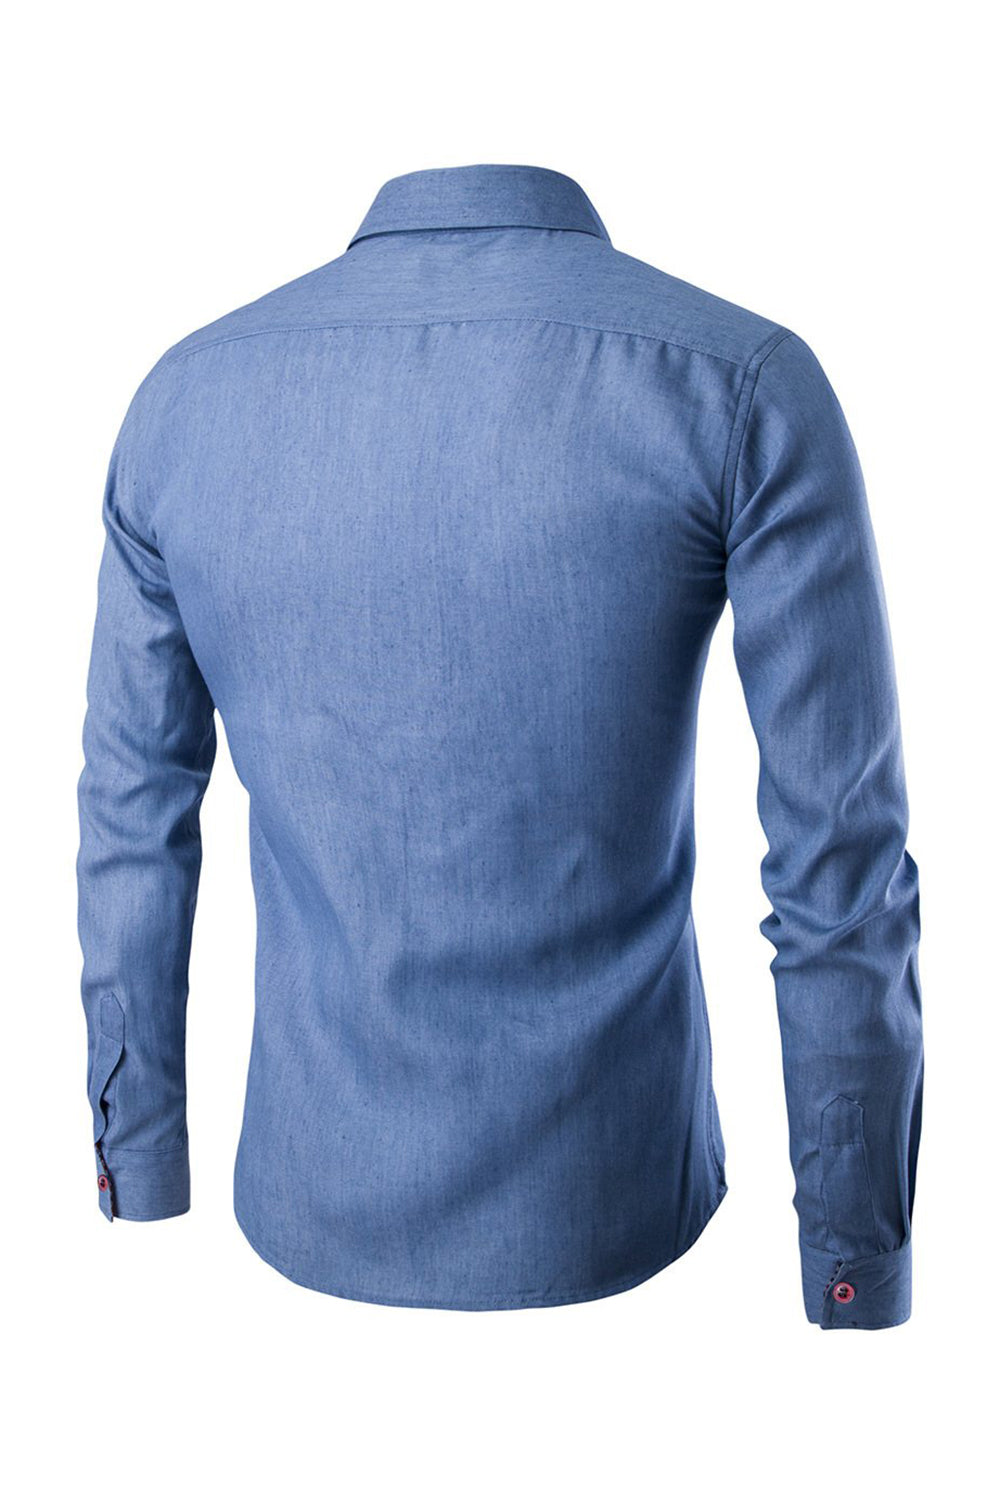 Cotton Long Sleeve Plus Size Blue Men's Shirt